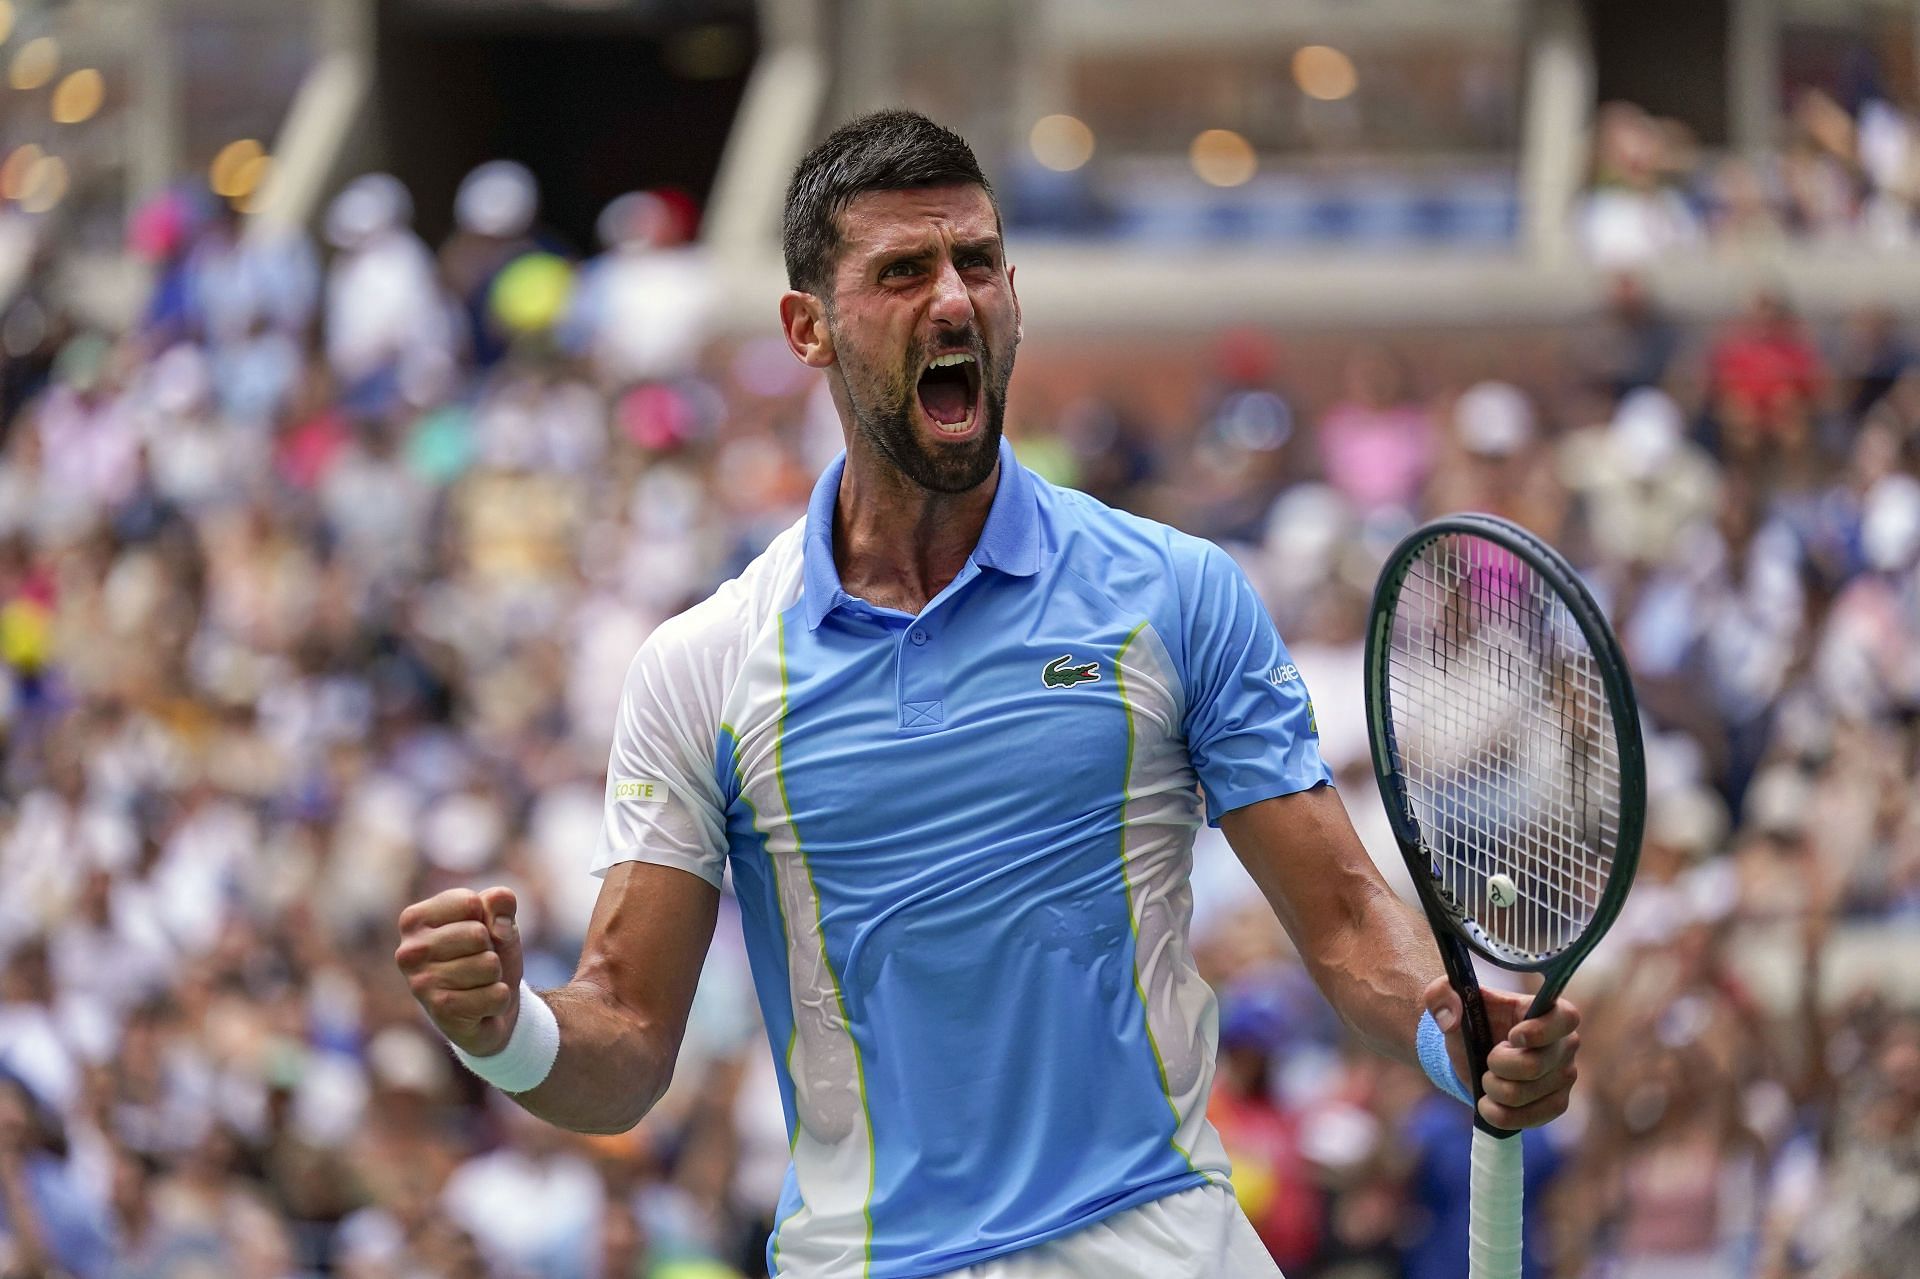 US Open 2023 men's semifinals odds: Novak Djokovic heaviest favorite to win ahead of Carlos Alcaraz according to bookmakers